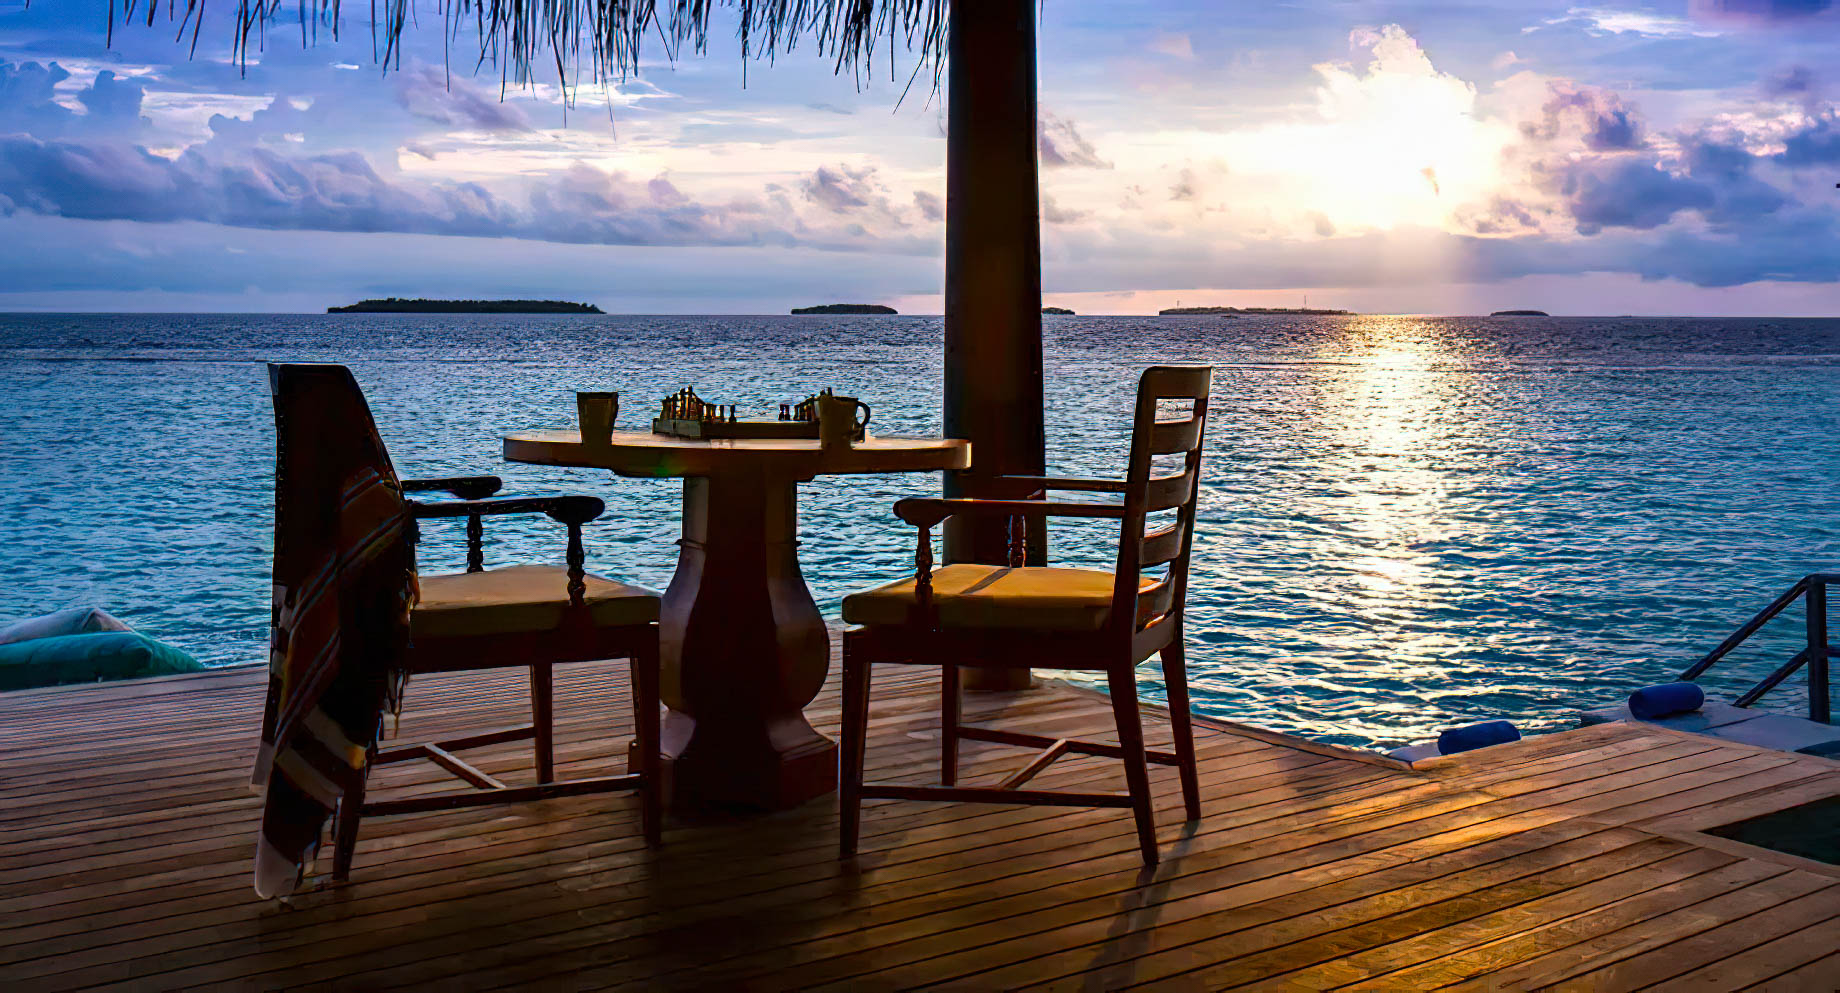 Anantara Kihavah Maldives Villas Resort – Baa Atoll, Maldives – Over Water Pool Villa Deck Ocean View Sunset